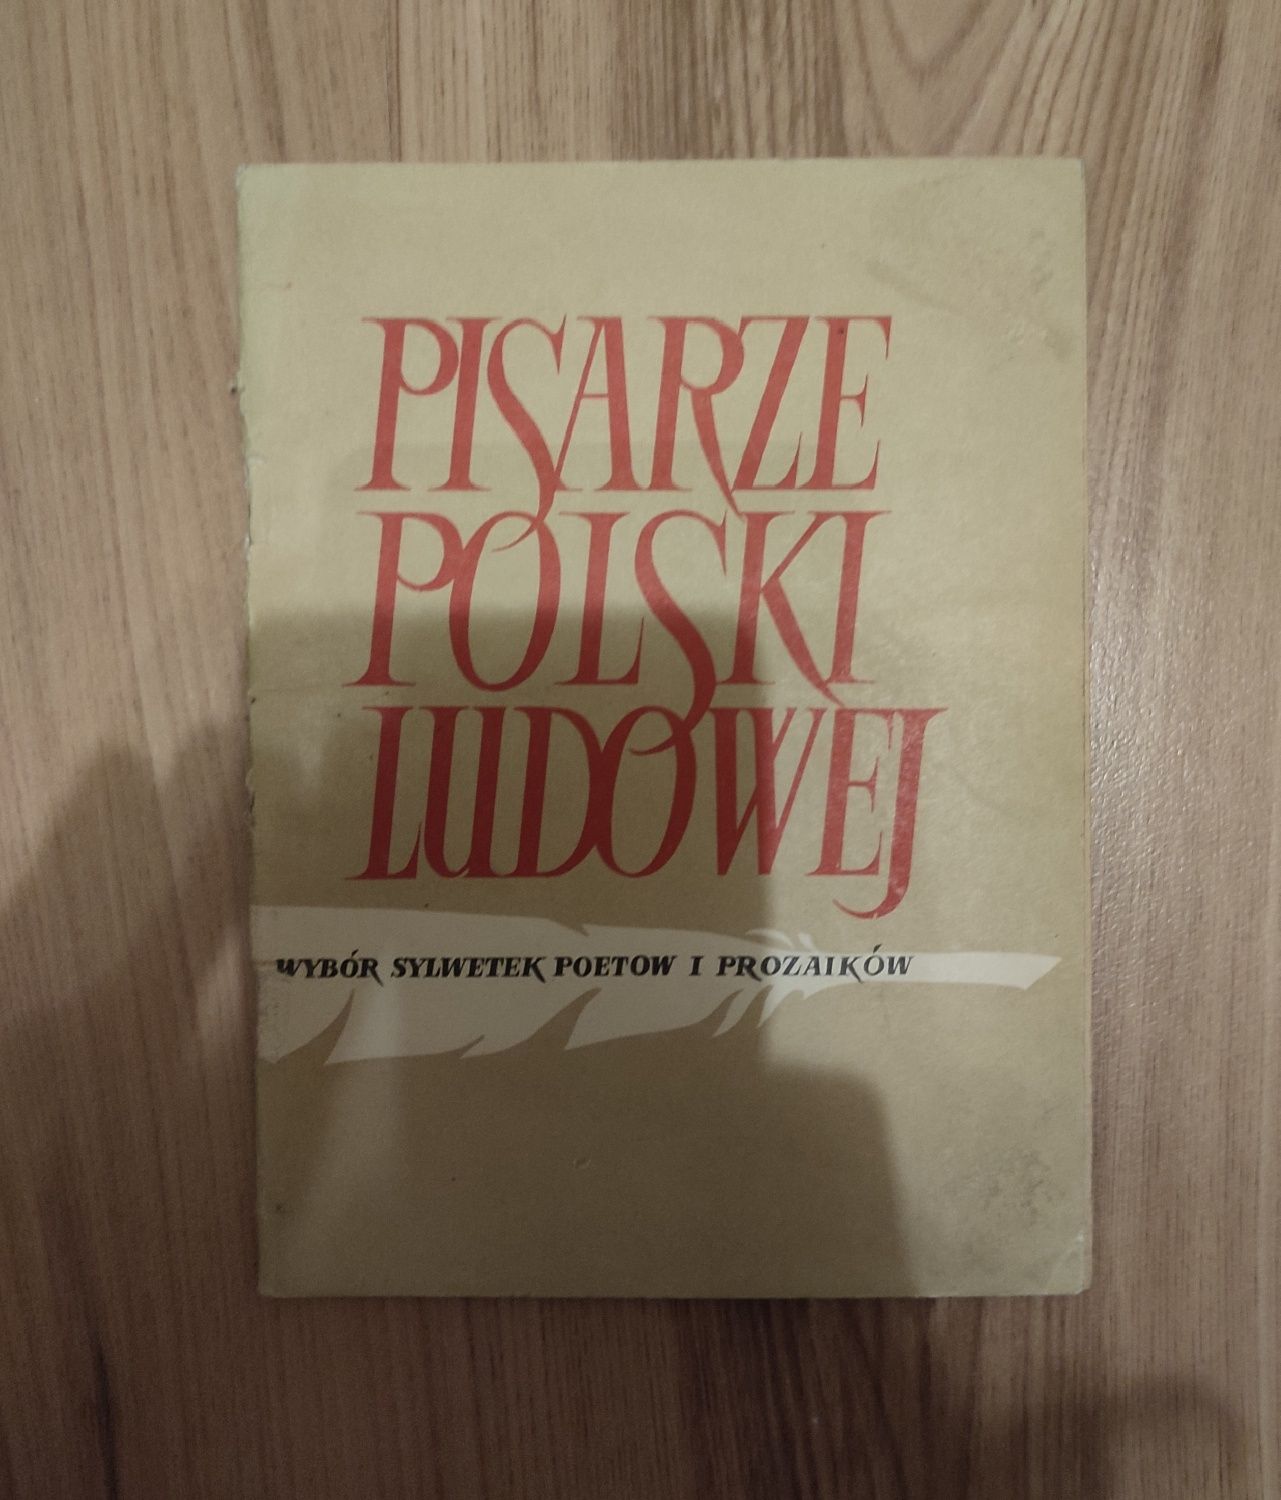 Książka Pisarze Polski Ludowej
Stan dobry